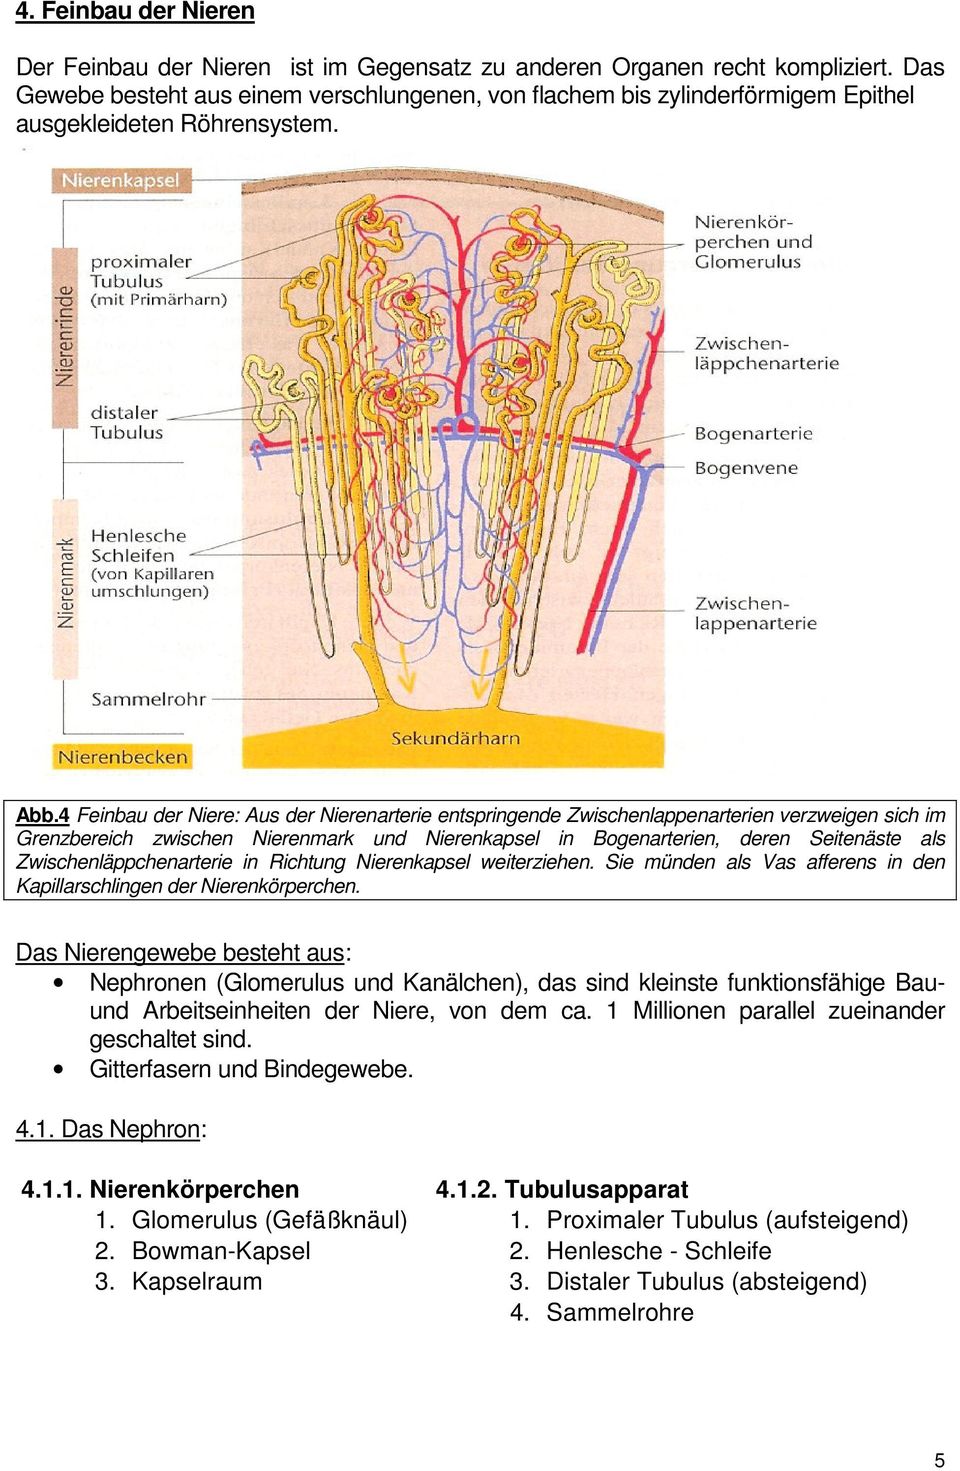 4 Feinbau der Niere: Aus der Nierenarterie entspringende Zwischenlappenarterien verzweigen sich im Grenzbereich zwischen Nierenmark und Nierenkapsel in Bogenarterien, deren Seitenäste als